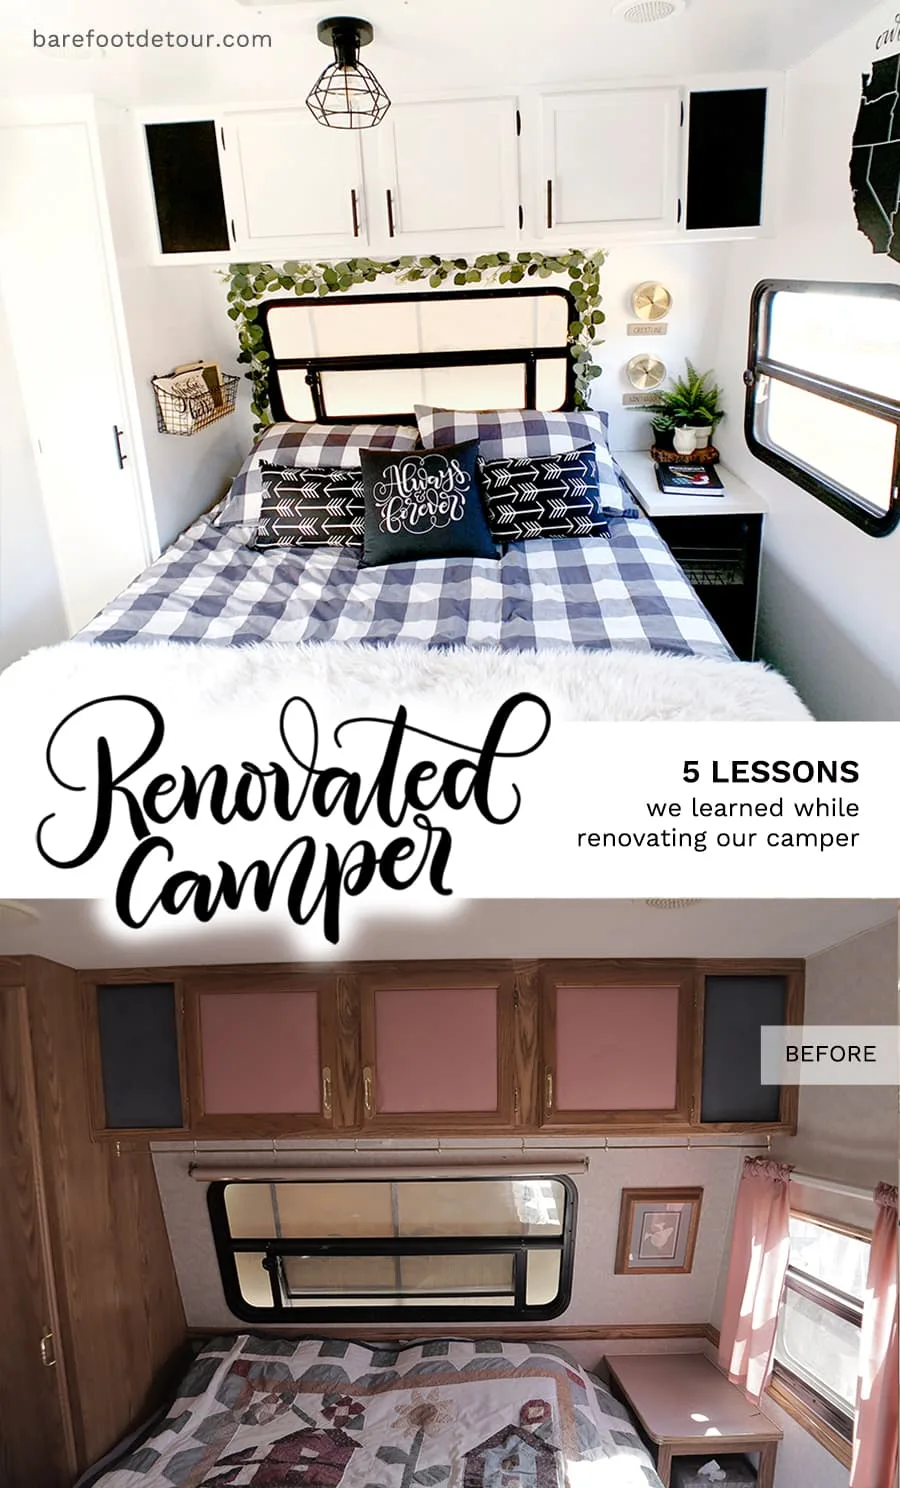 https://barefootdetour.com/wp-content/uploads/2018/11/Renovated-camper-lessons-3.jpg.webp